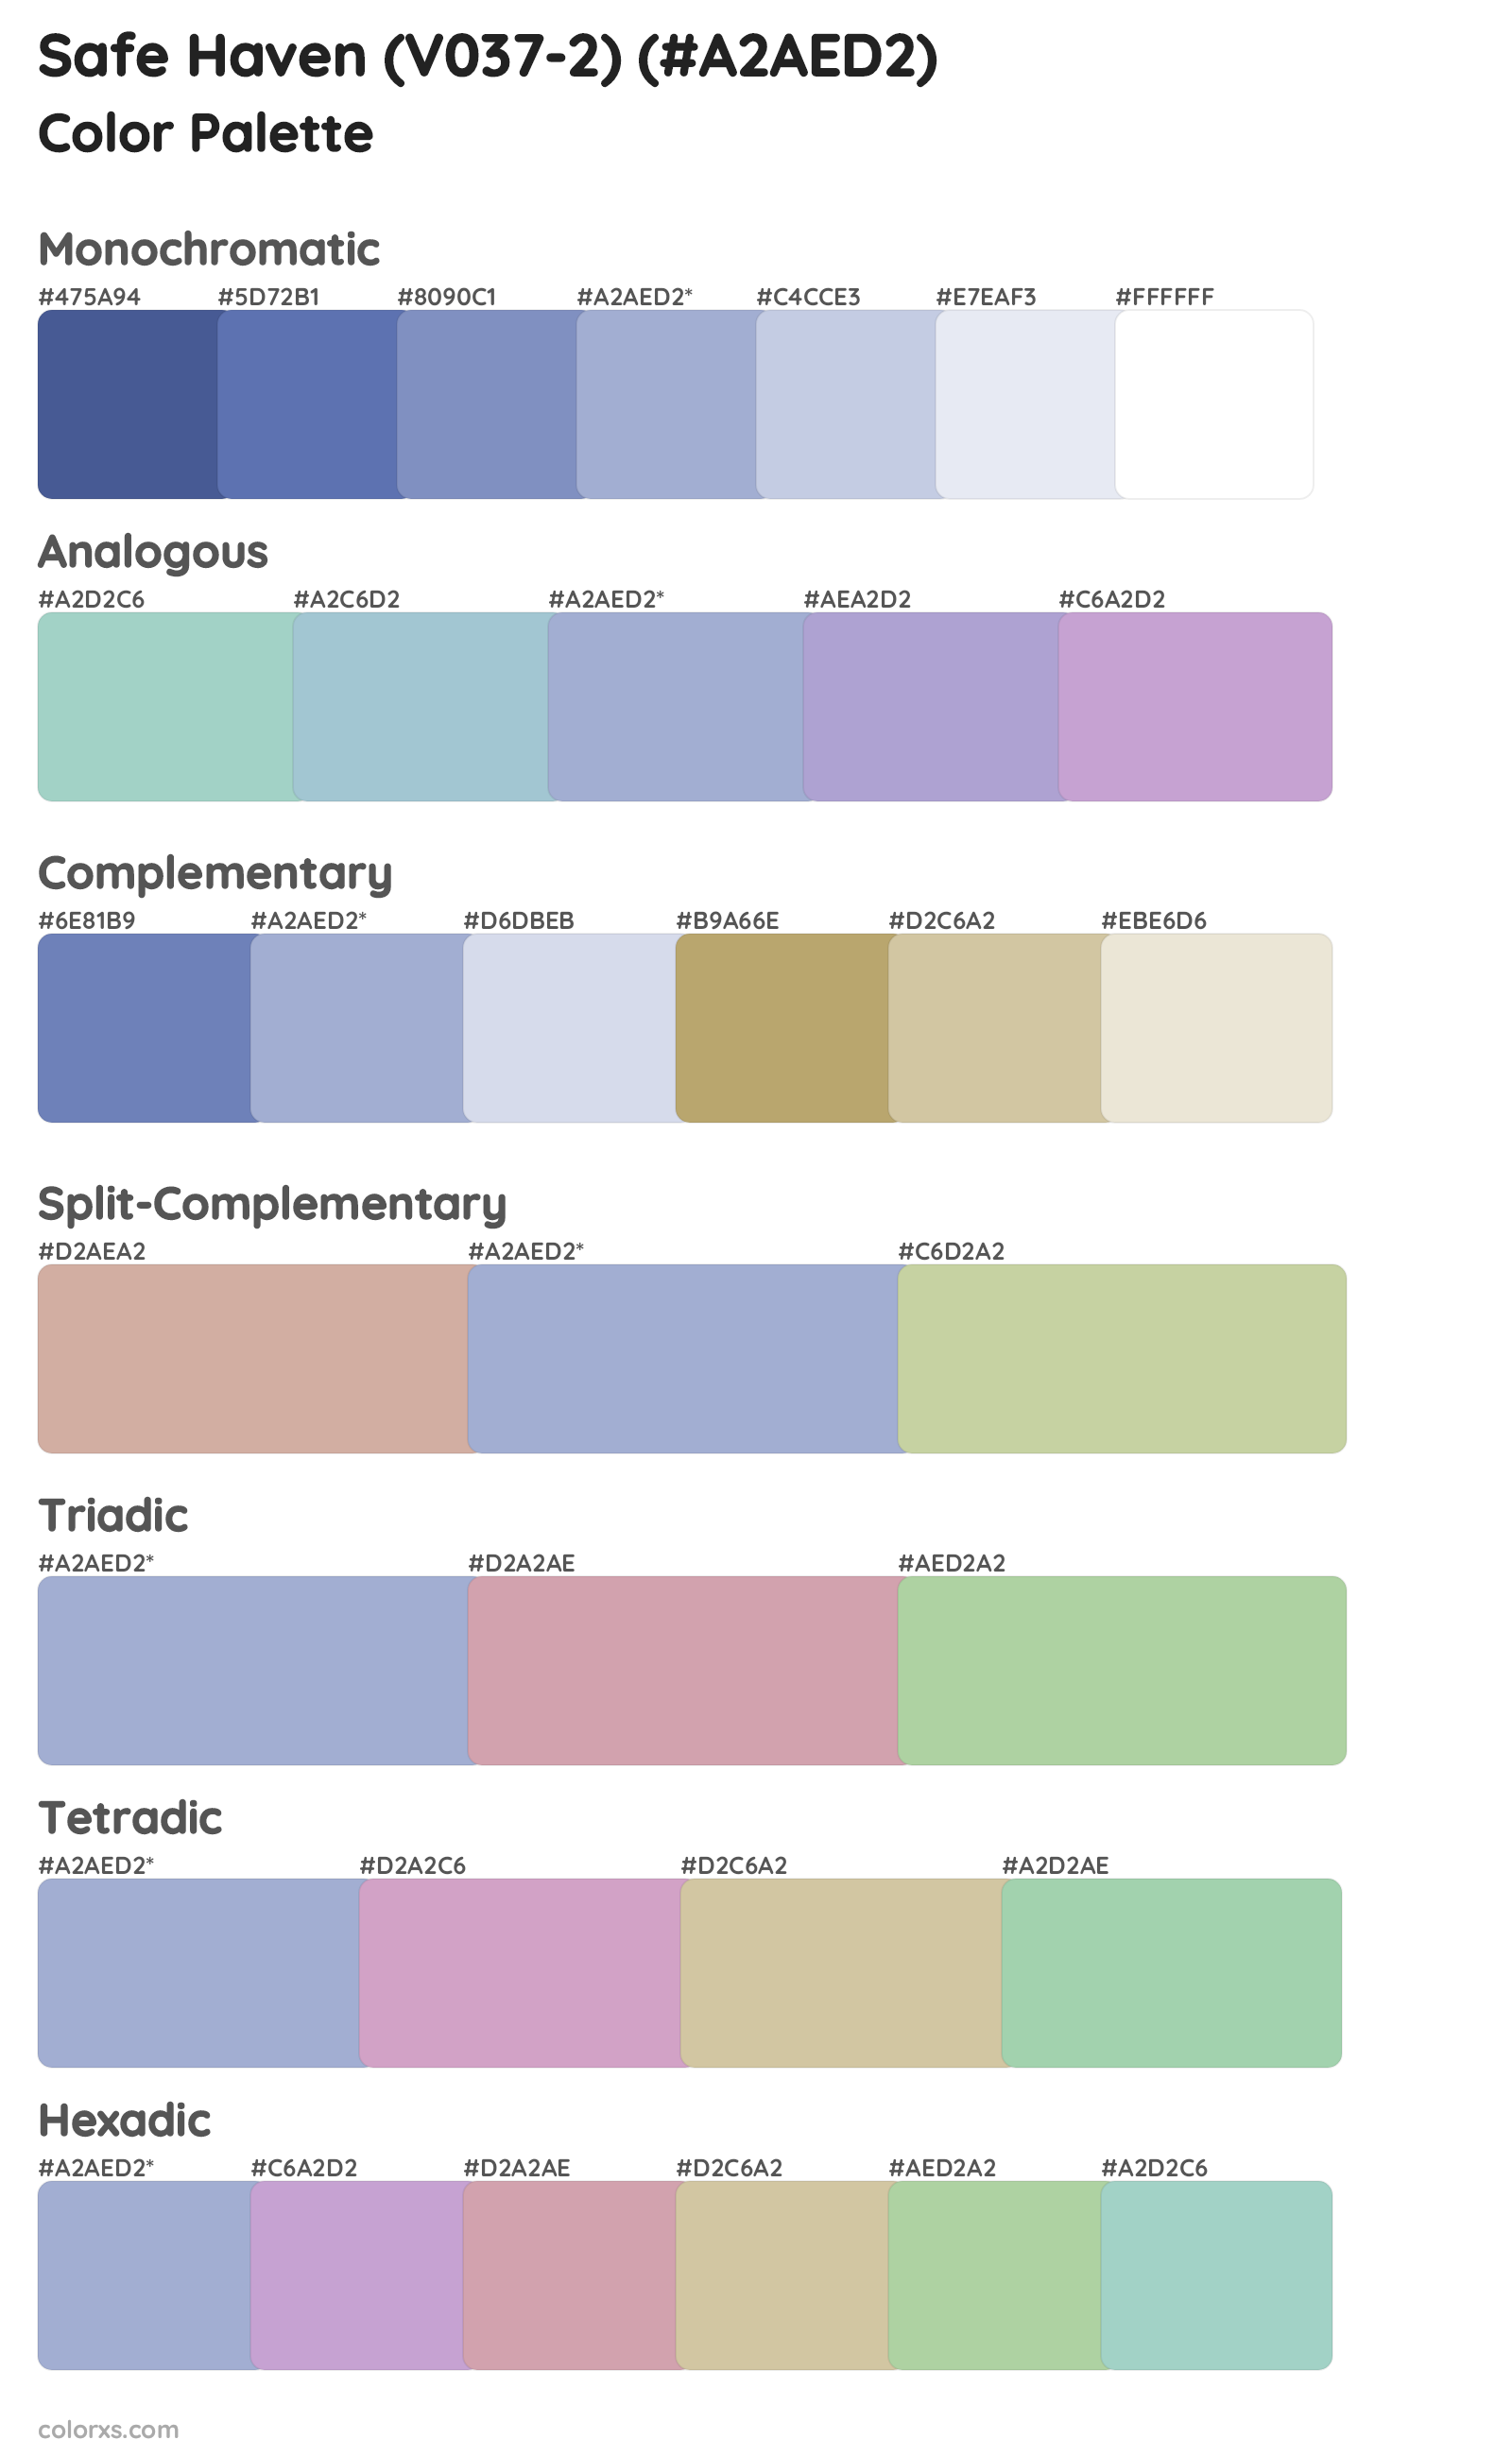 Safe Haven (V037-2) Color Scheme Palettes